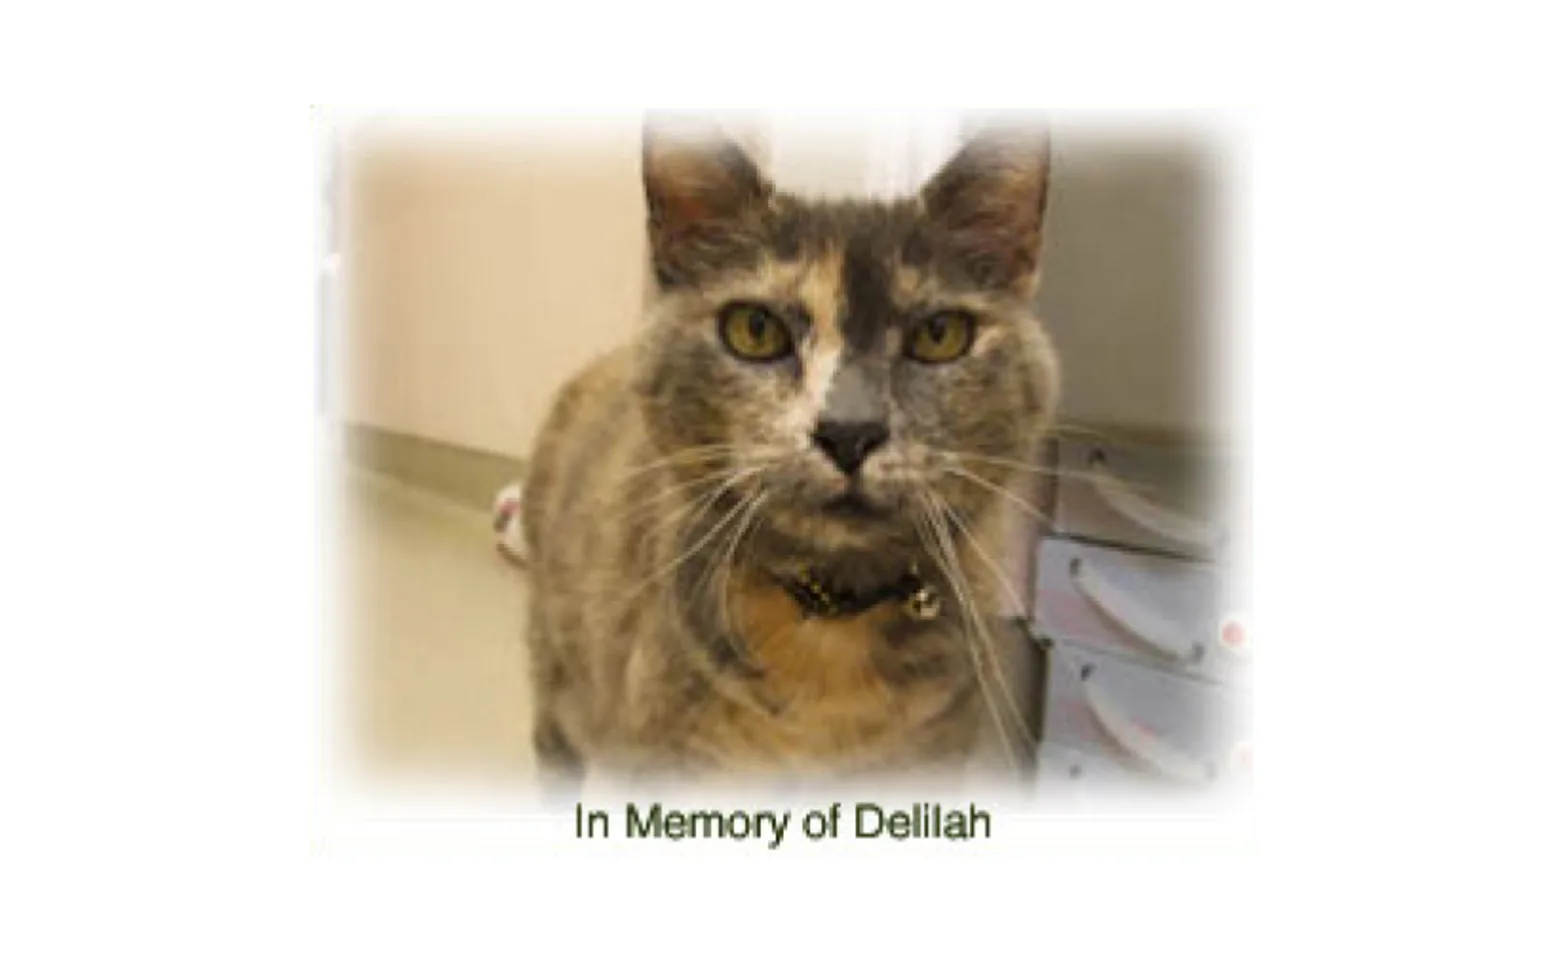 A cat named Delilah